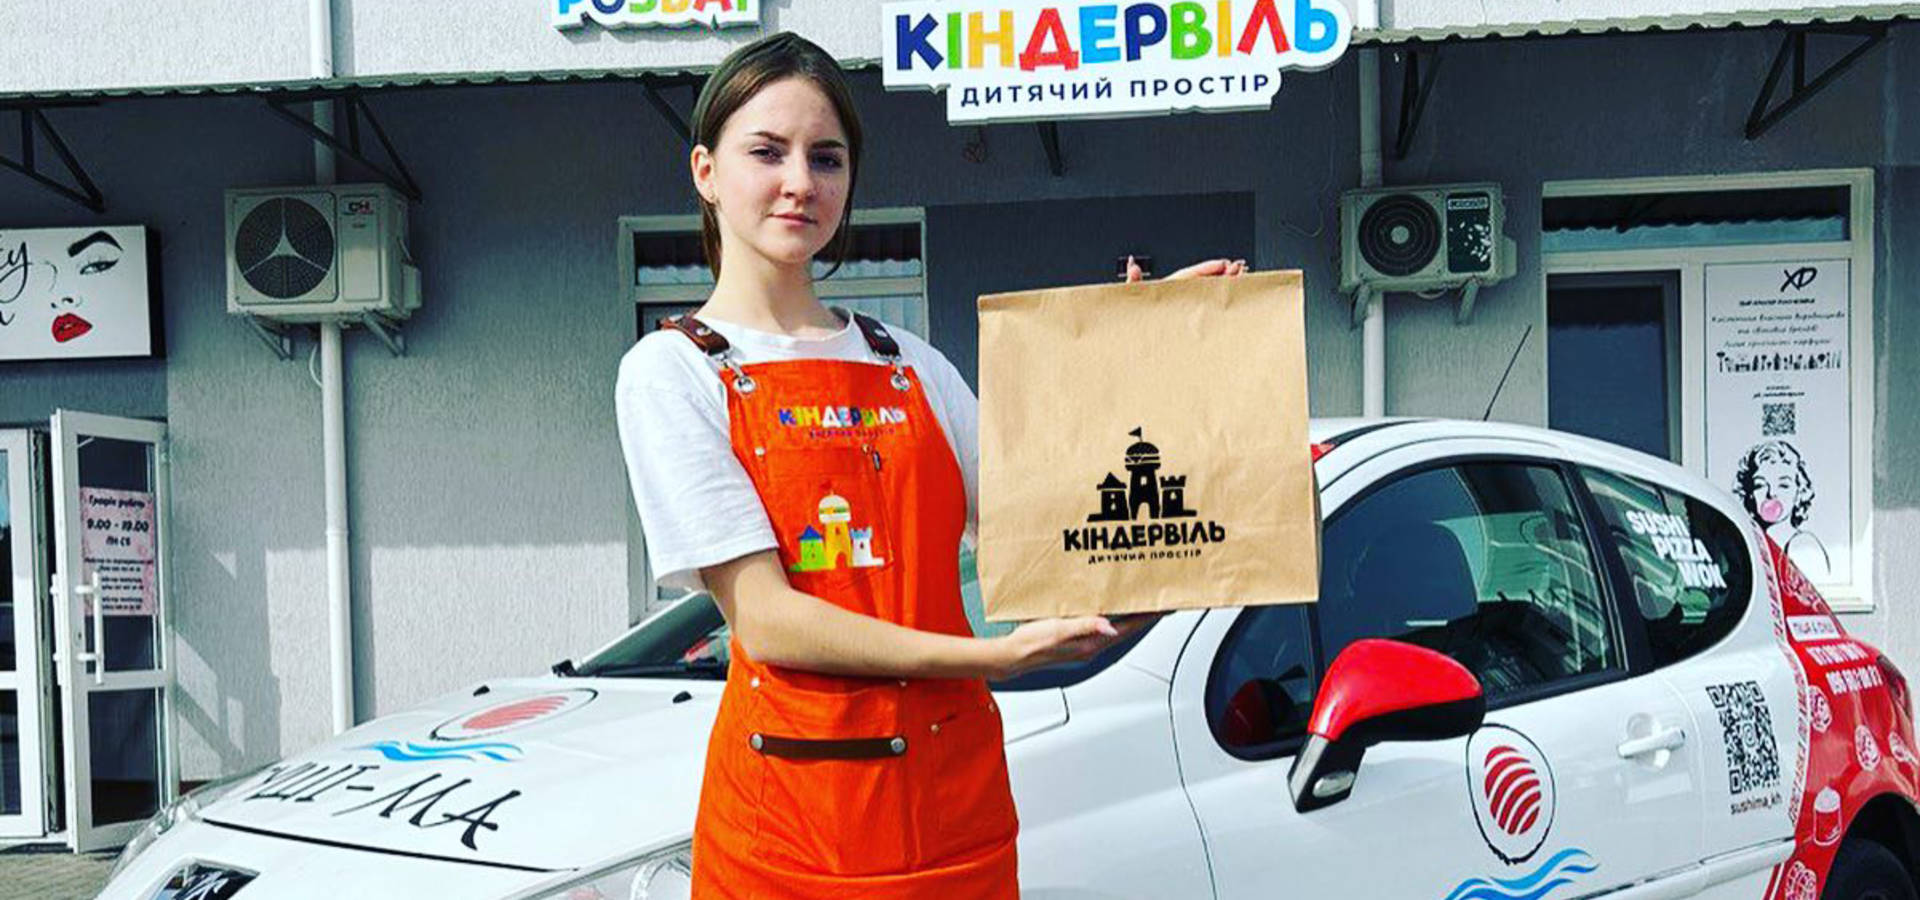 Піцерія "Суші-Ма" та дитячий простір "Кіндервіль" у Хмільнику організували спільну доставку смачних страв 